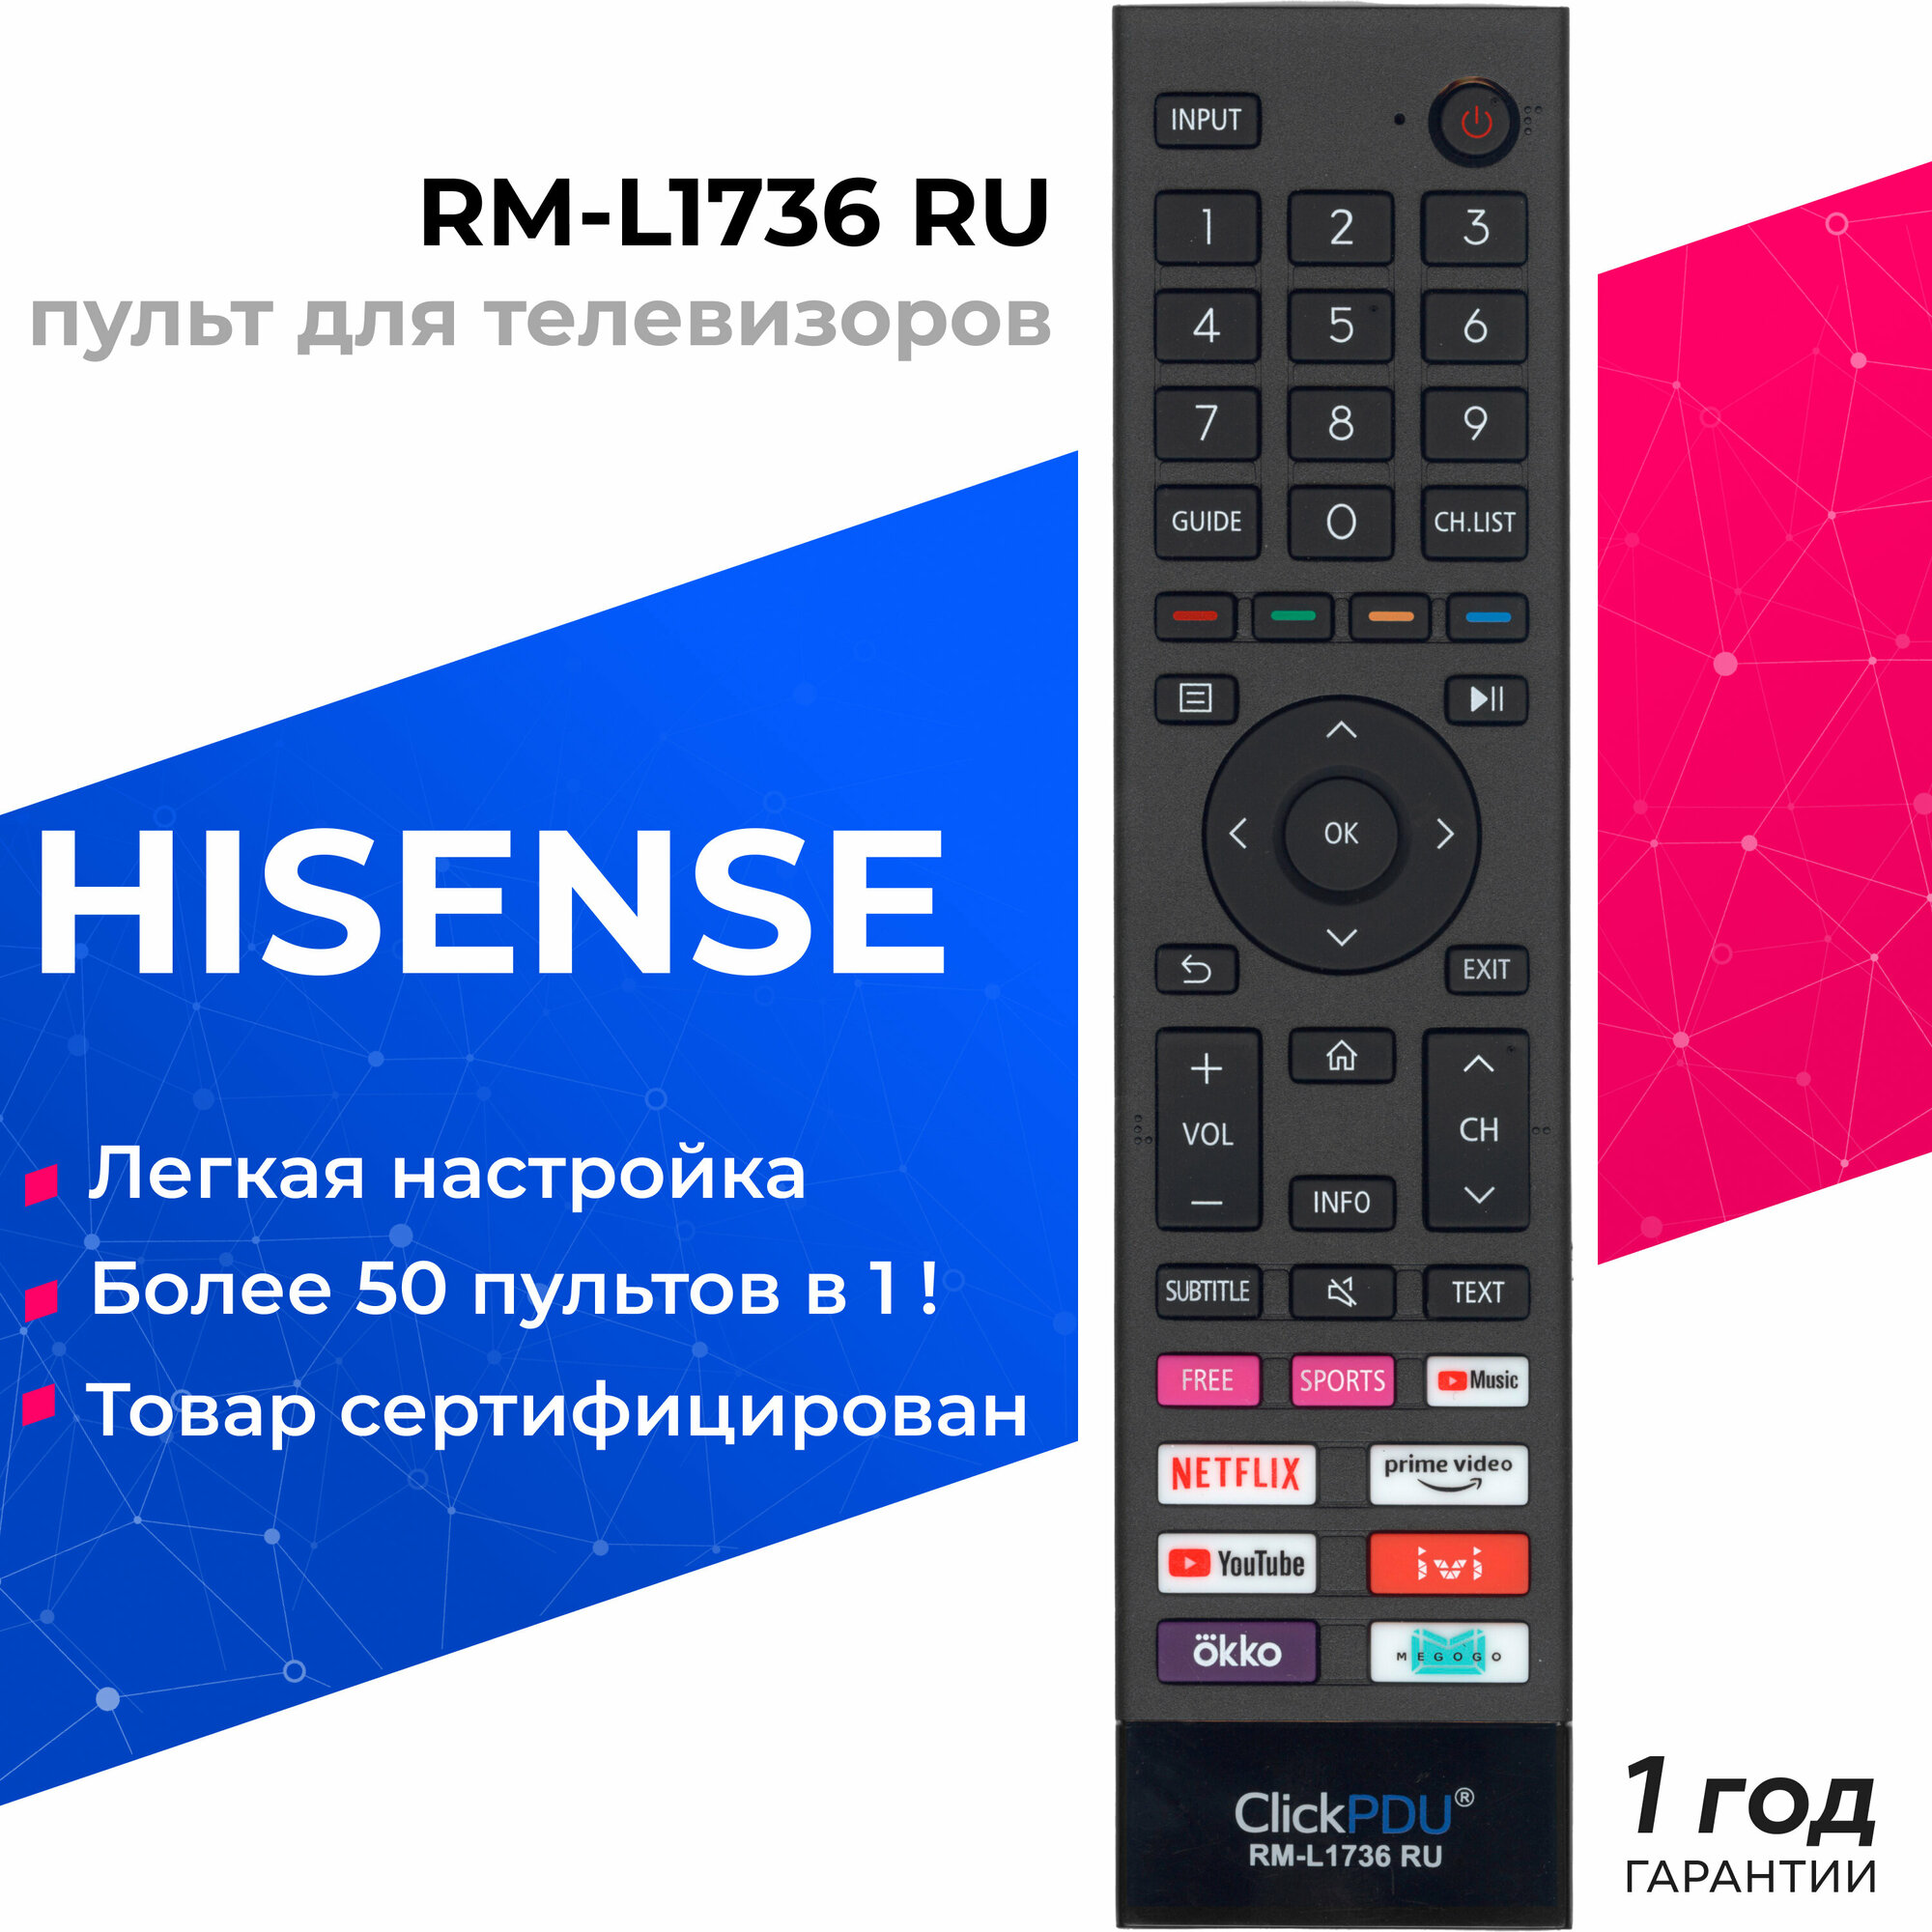 Универсальный пульт ClickPDU RM-L1736 RU для телевизоров Hisense